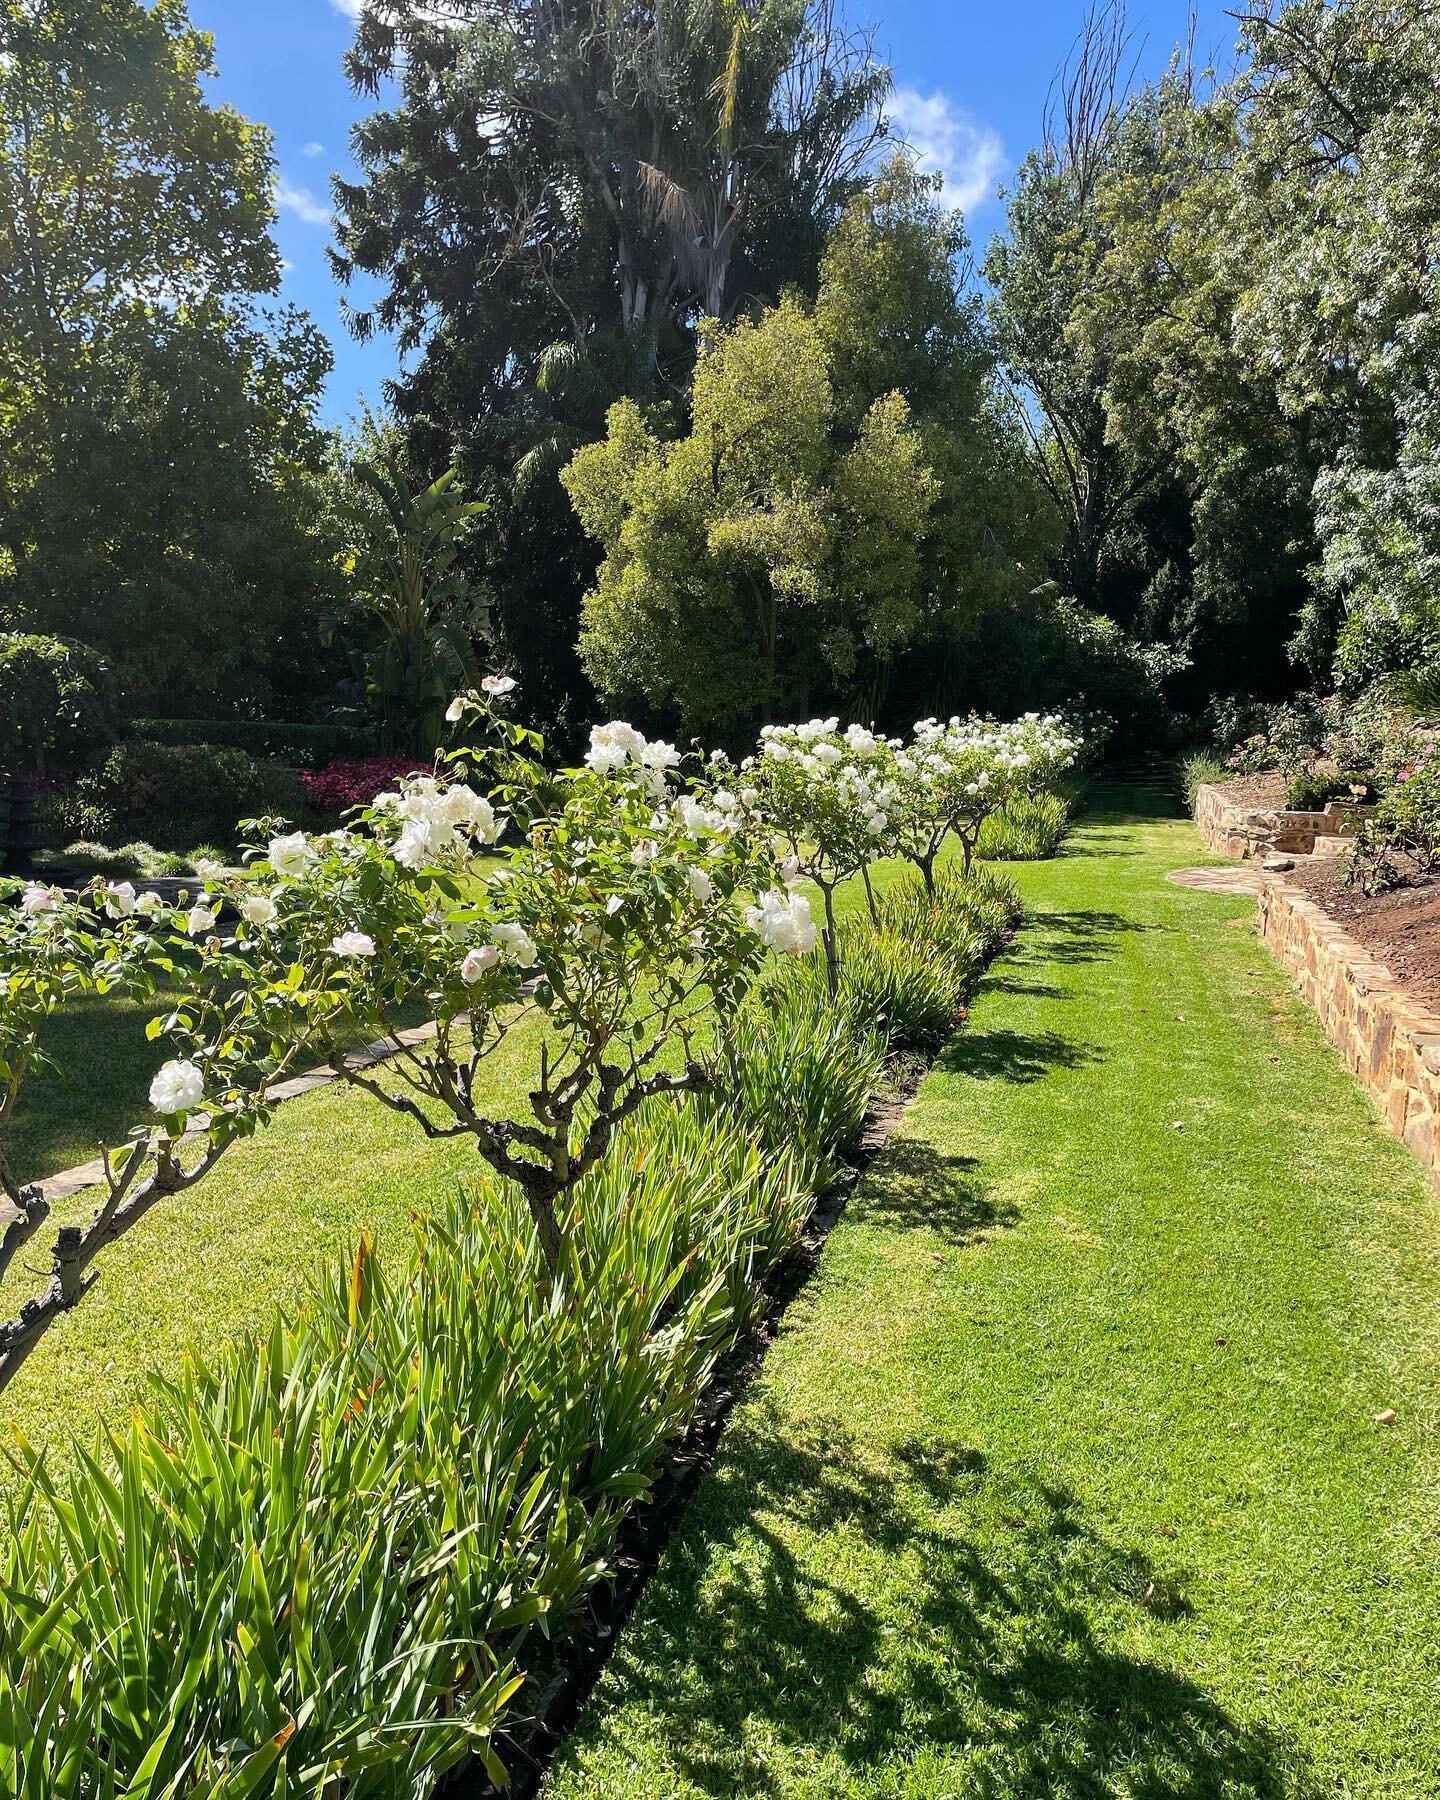 This garden looking a dream!

#contemporarygardenco #garden #gardenmaintenance #southaustralia #adelaide